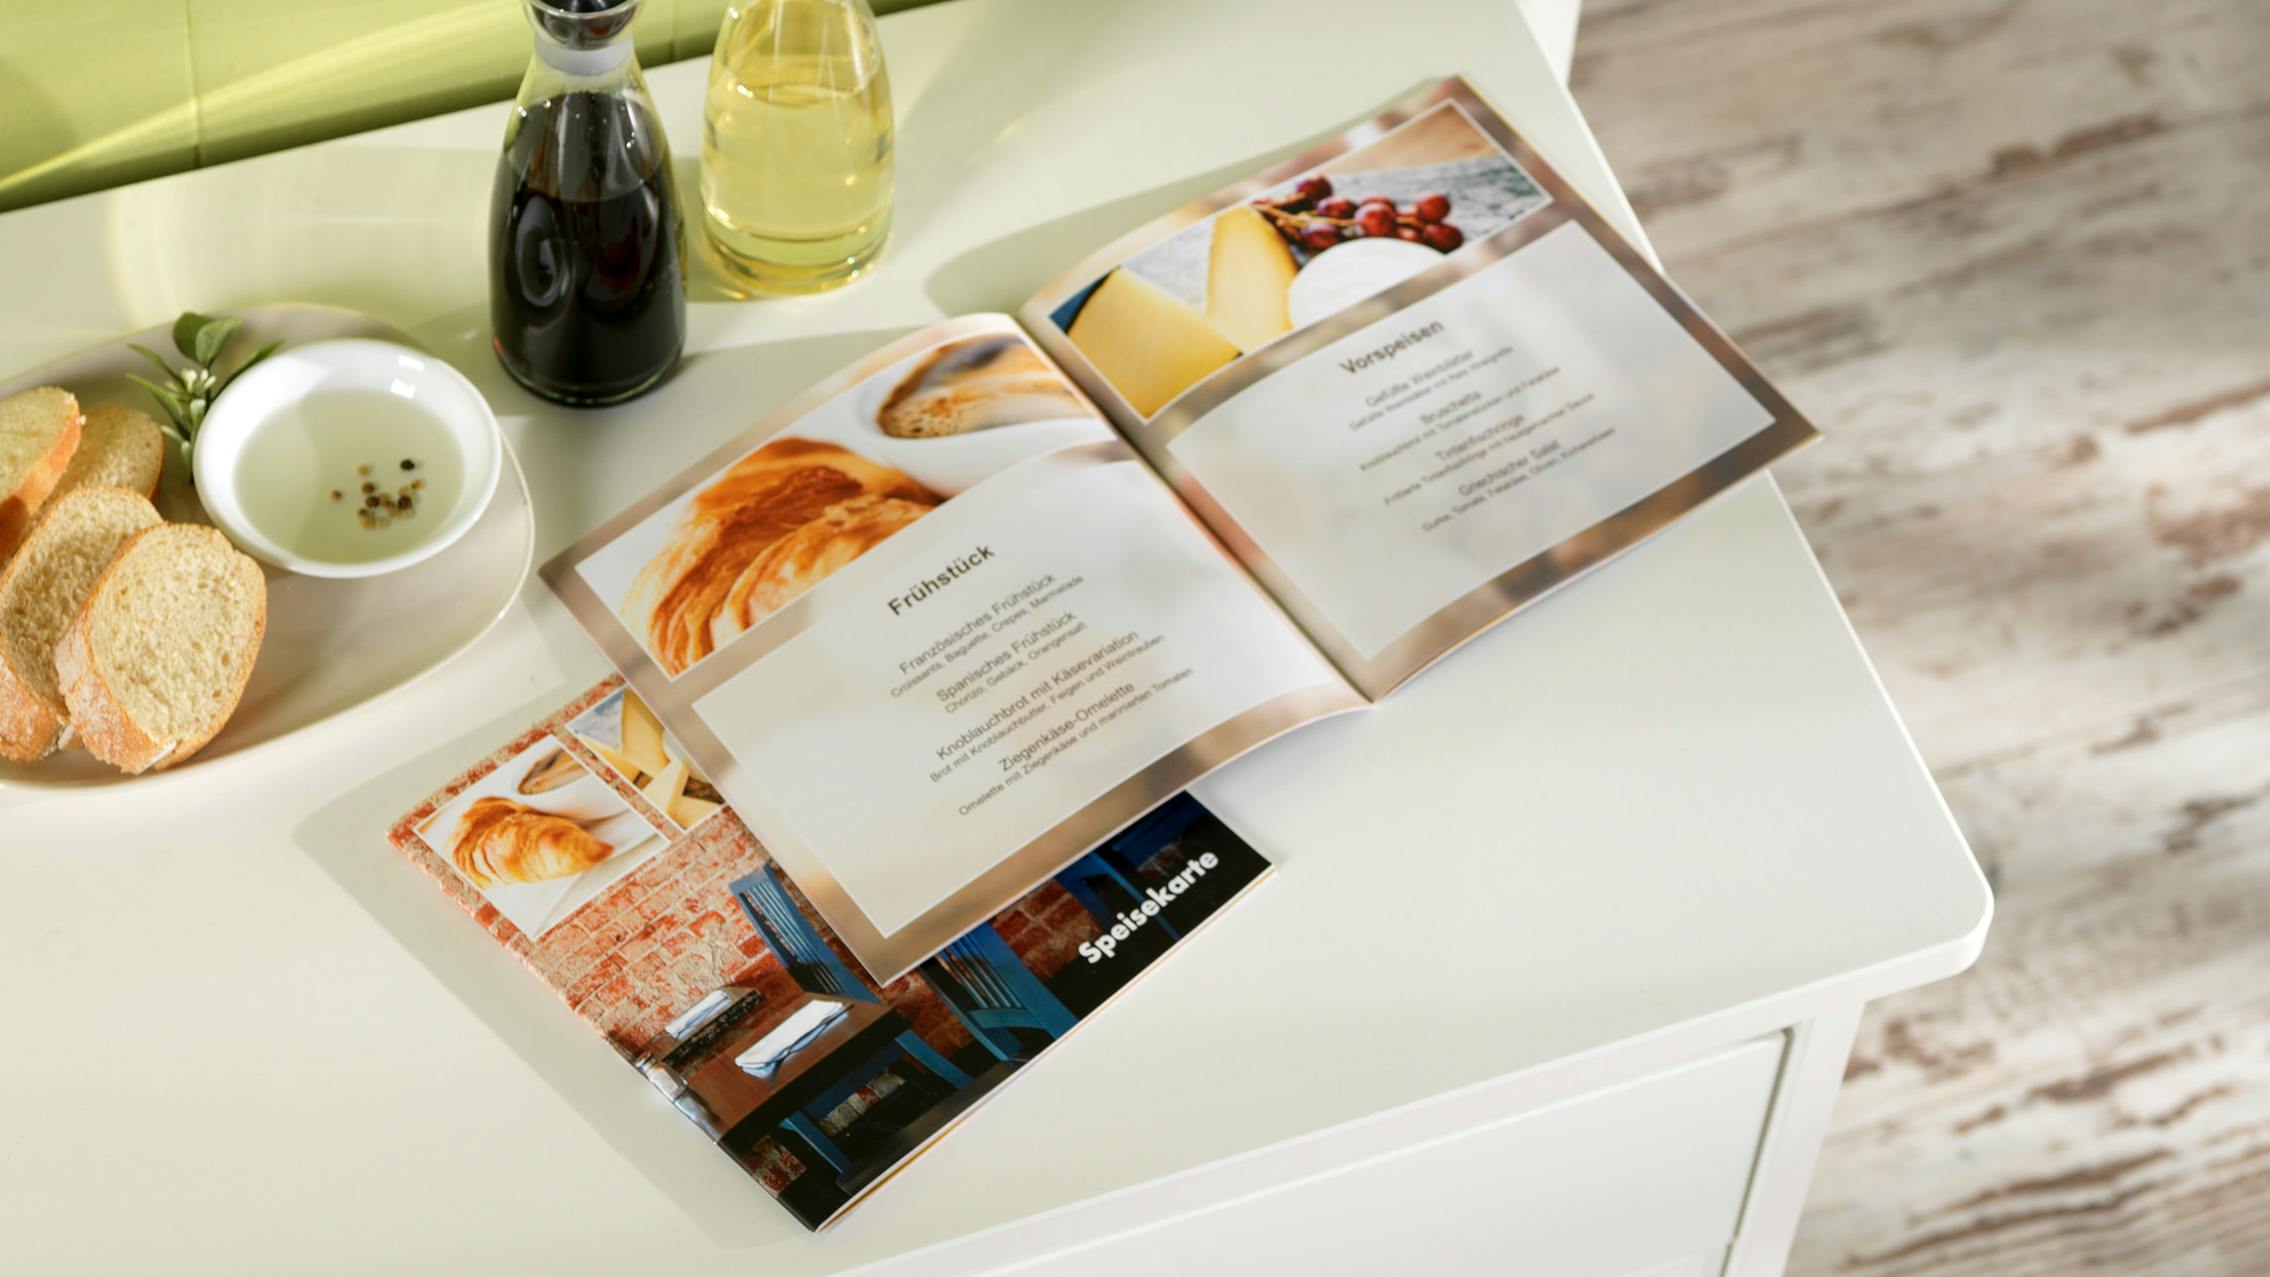 Fotobuch mit Softcover, das als Speisekarte gestaltet ist und auf einer Kommode liegt